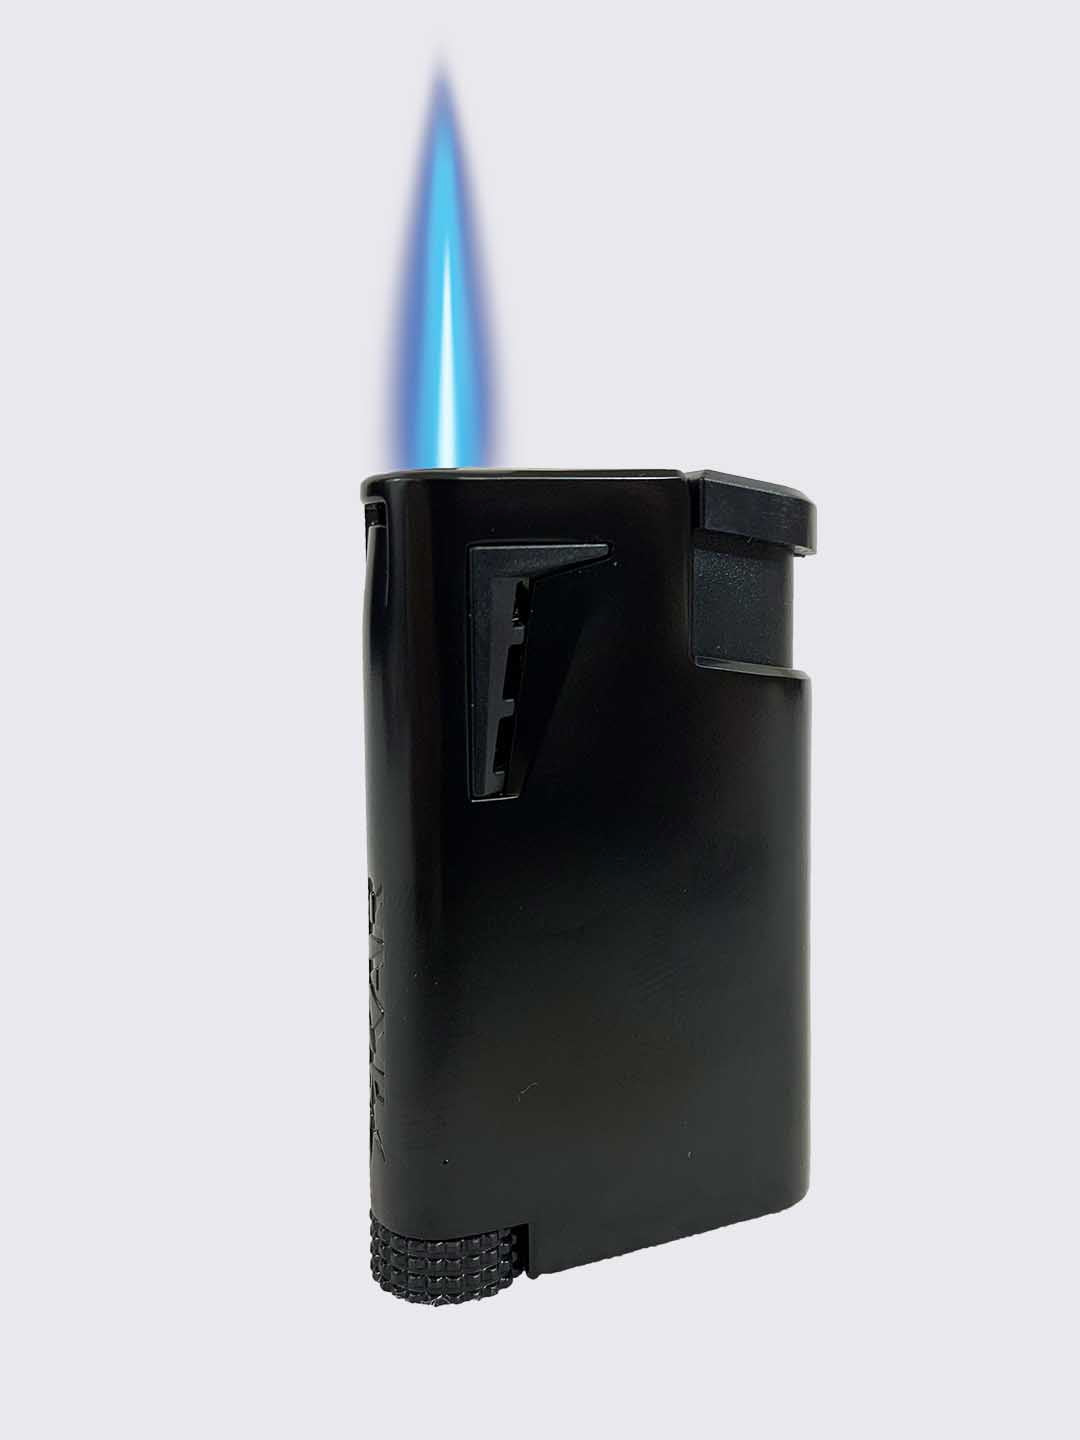 XIKAR® XK1 Single-jet Flame Lighter